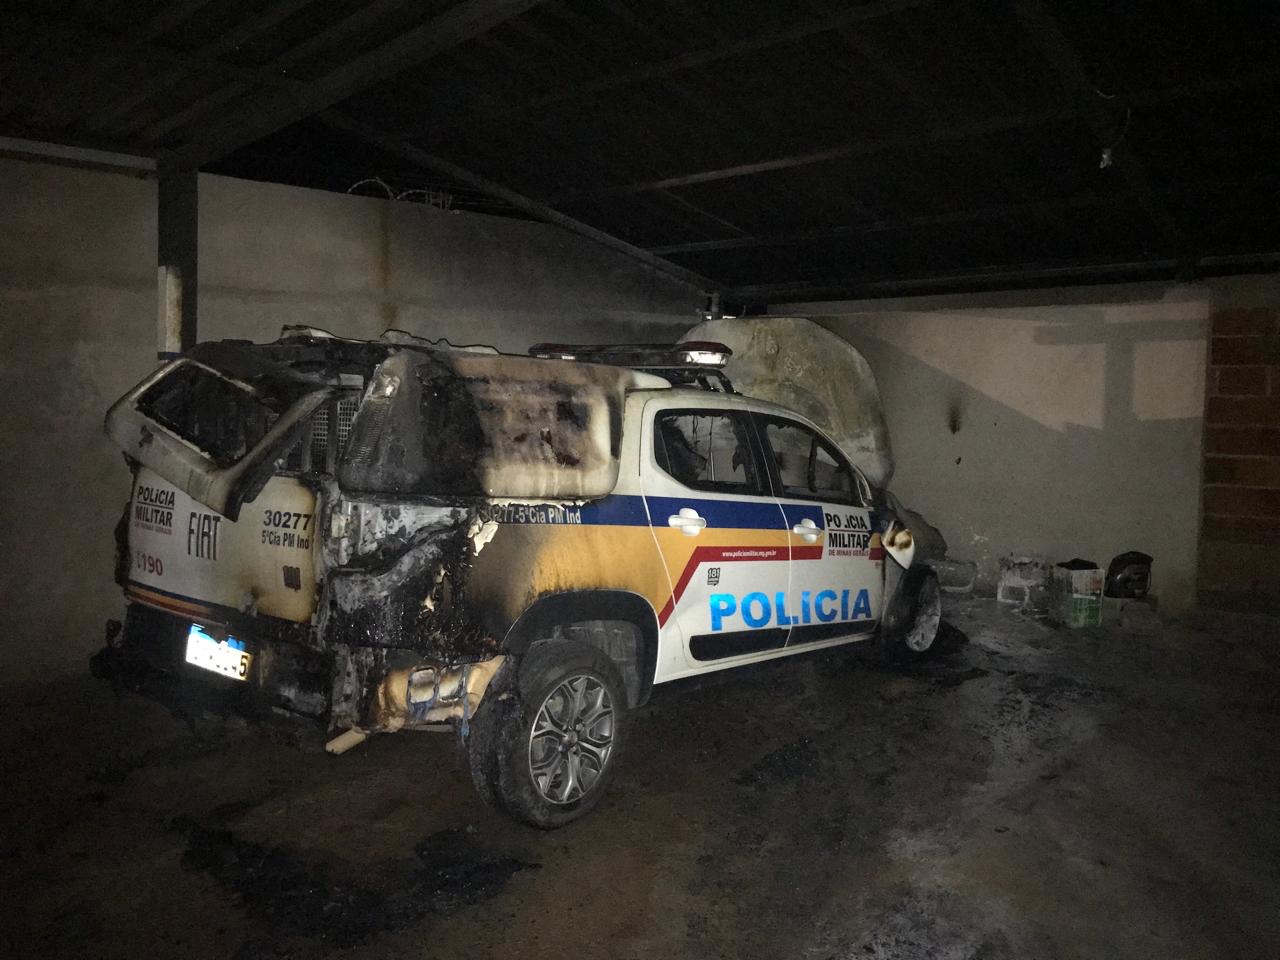 Grupo invade quartel e coloca fogo em viatura da PM em Periquito